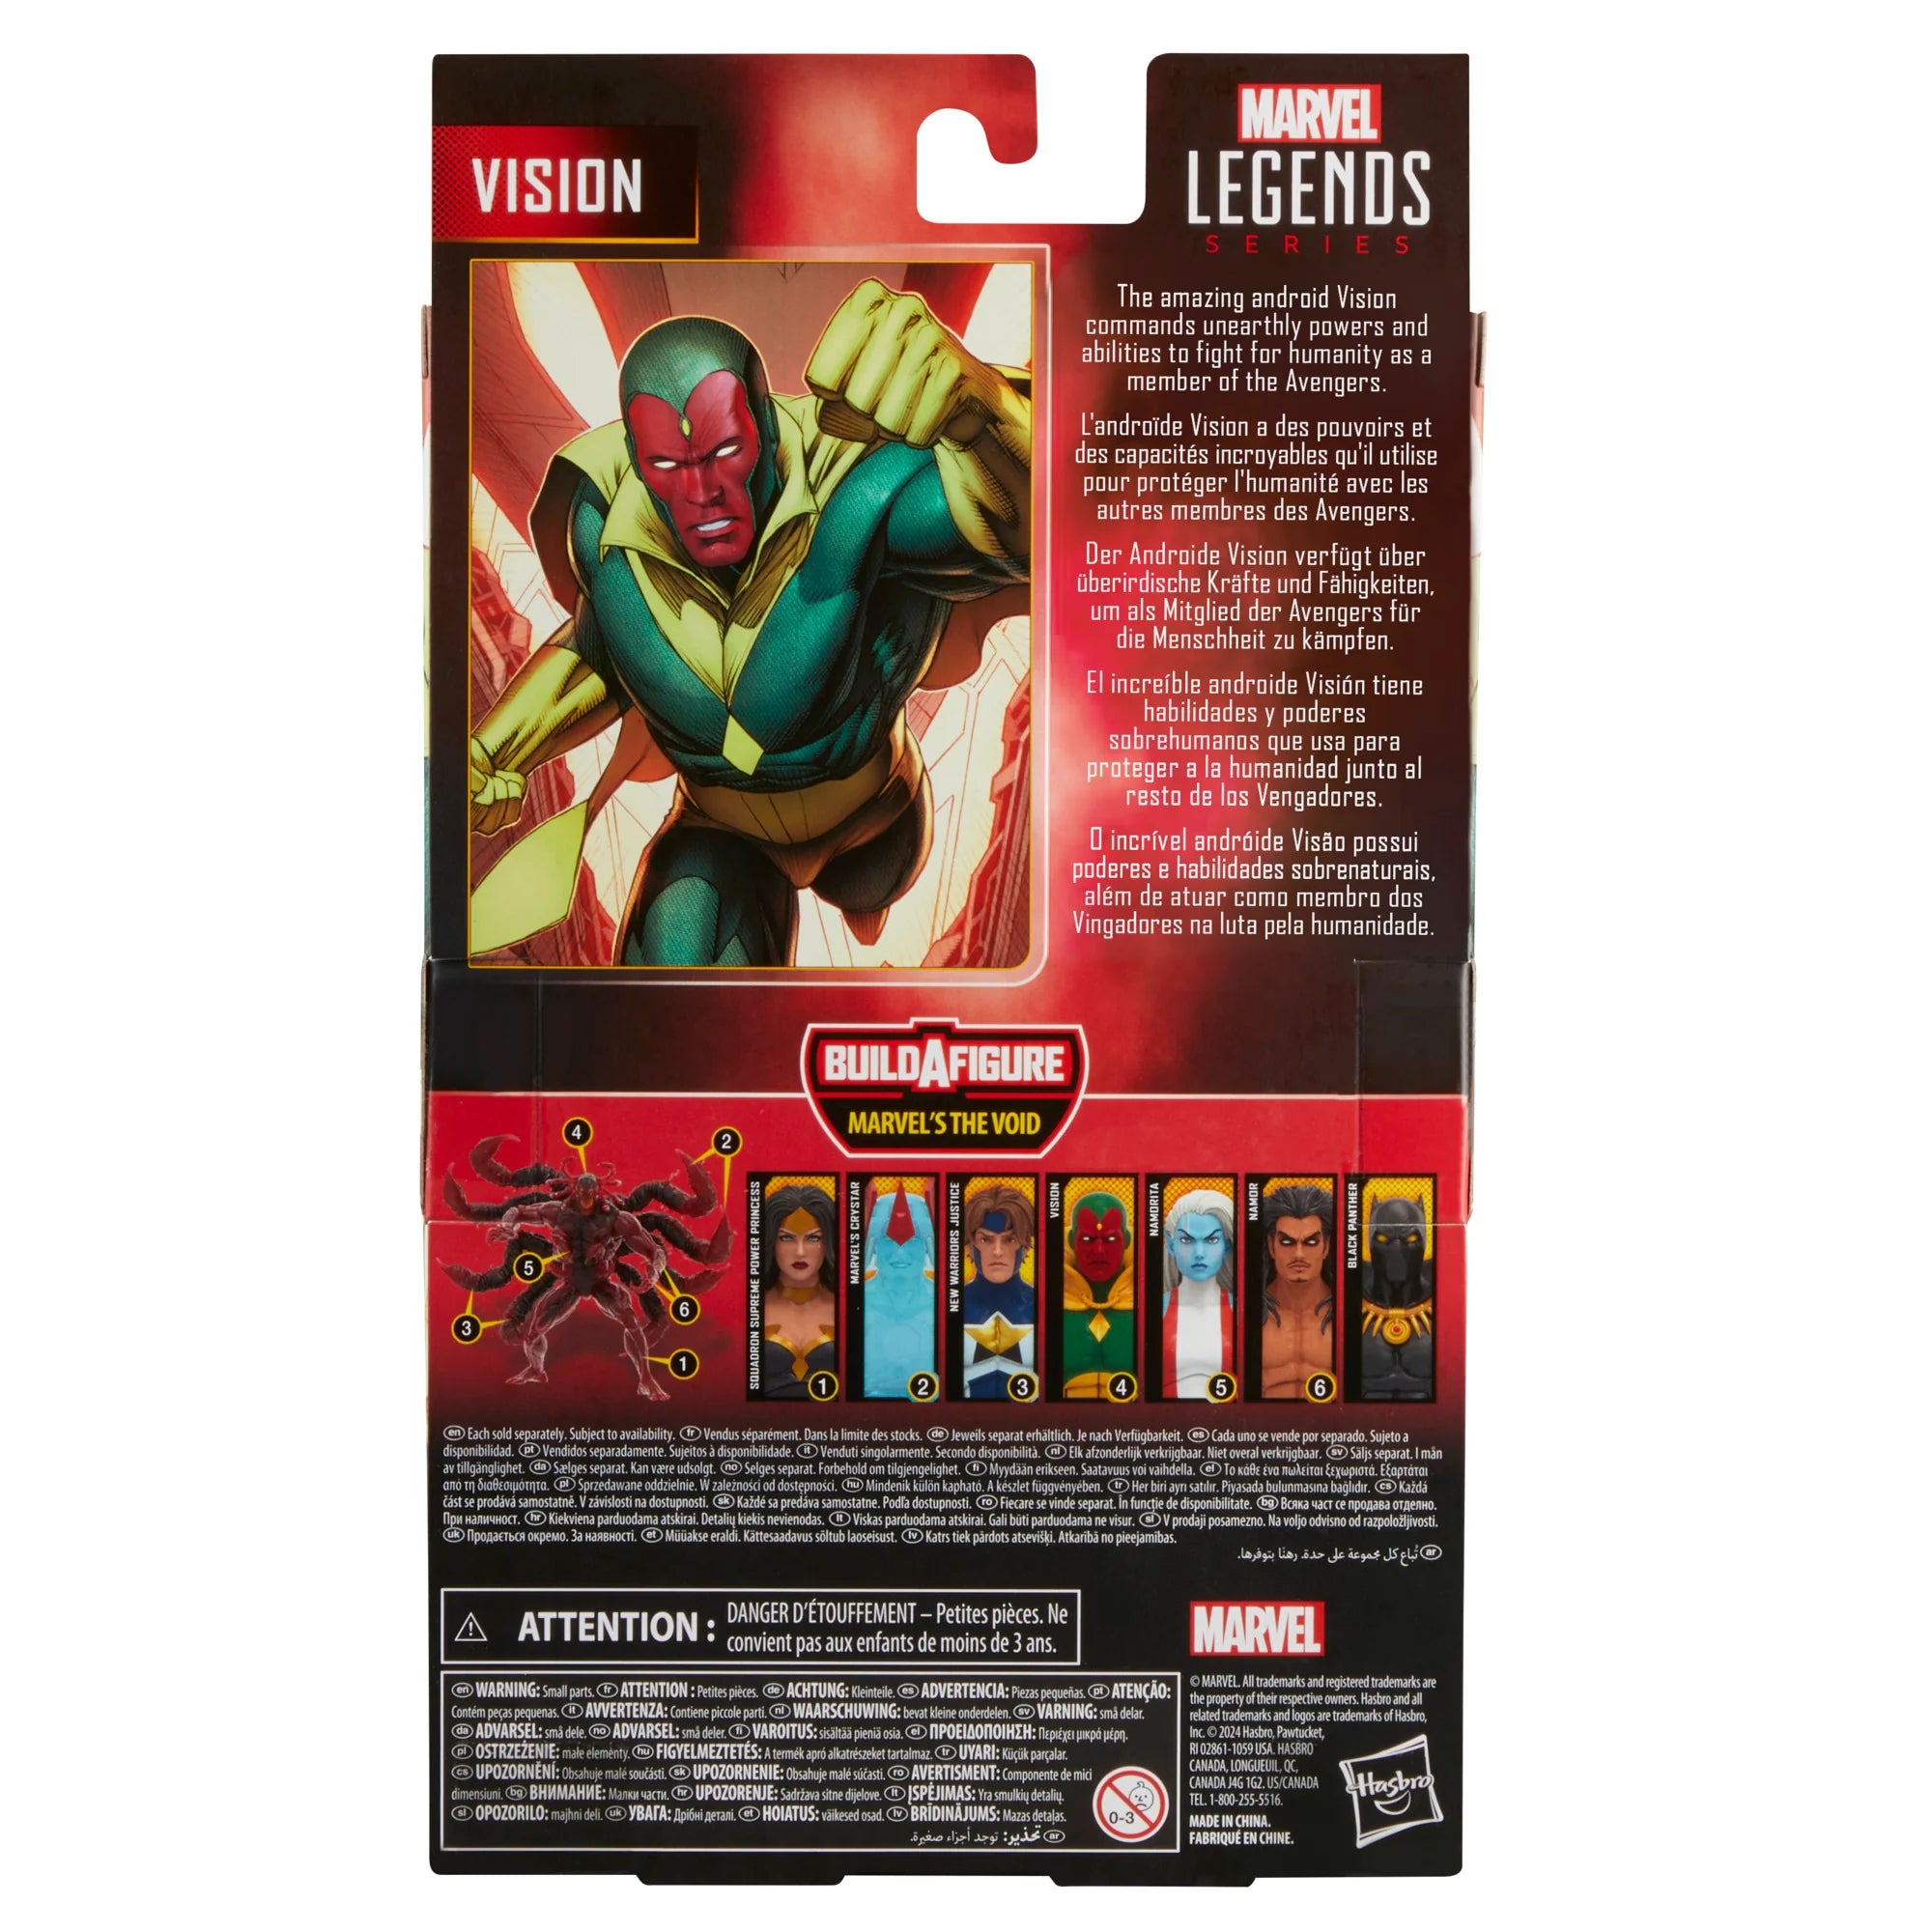 Marvel Legends Baf The Void: Marvel Comics - Vision